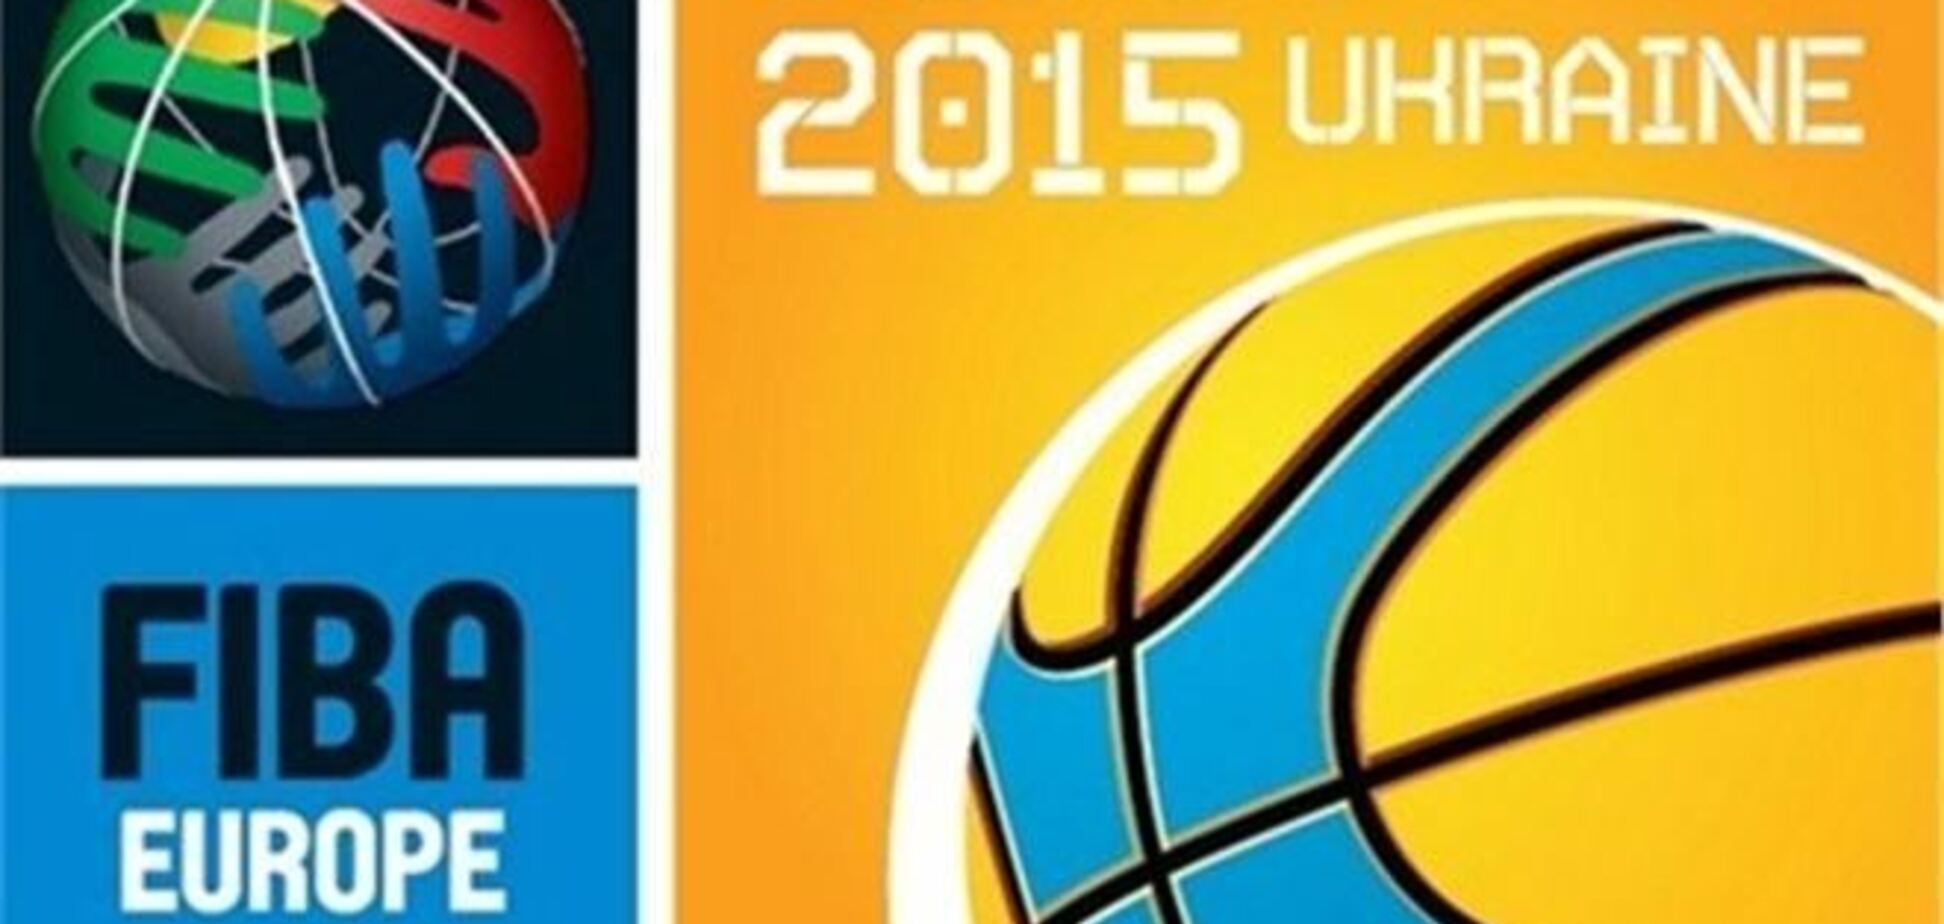 Украинские арены получили статус официальных площадок Евробаскет-2015